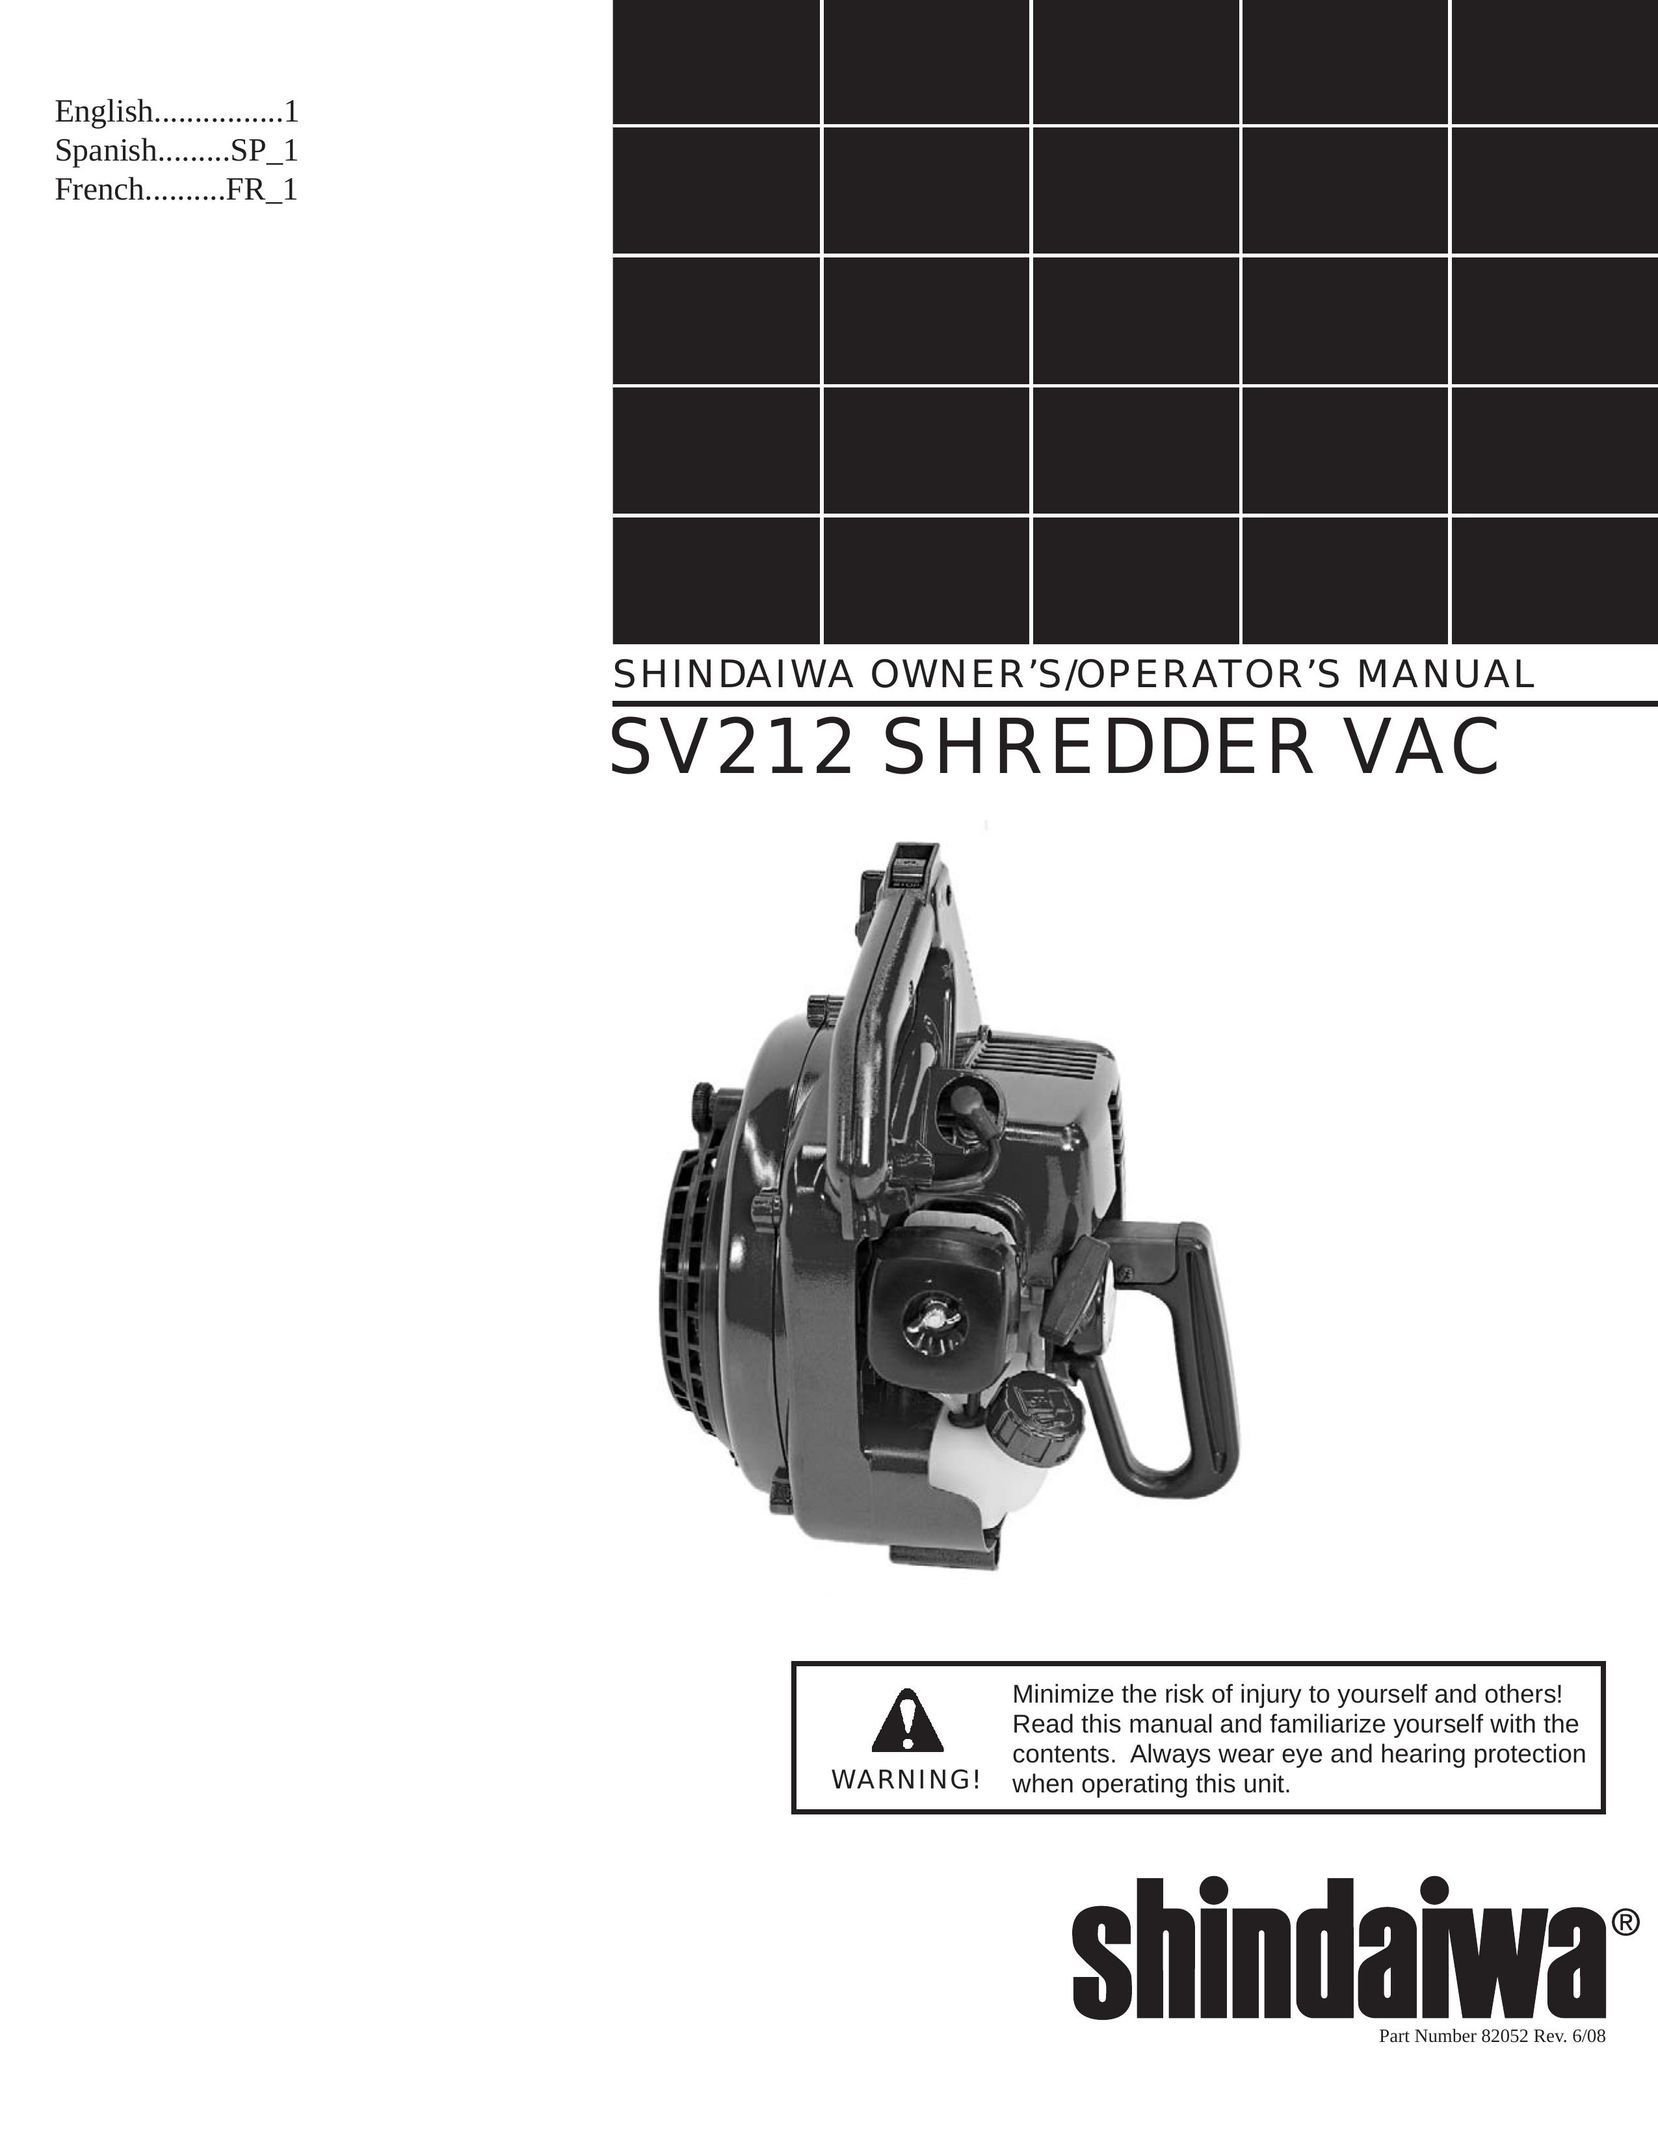 Shindaiwa 82052 Vacuum Cleaner User Manual